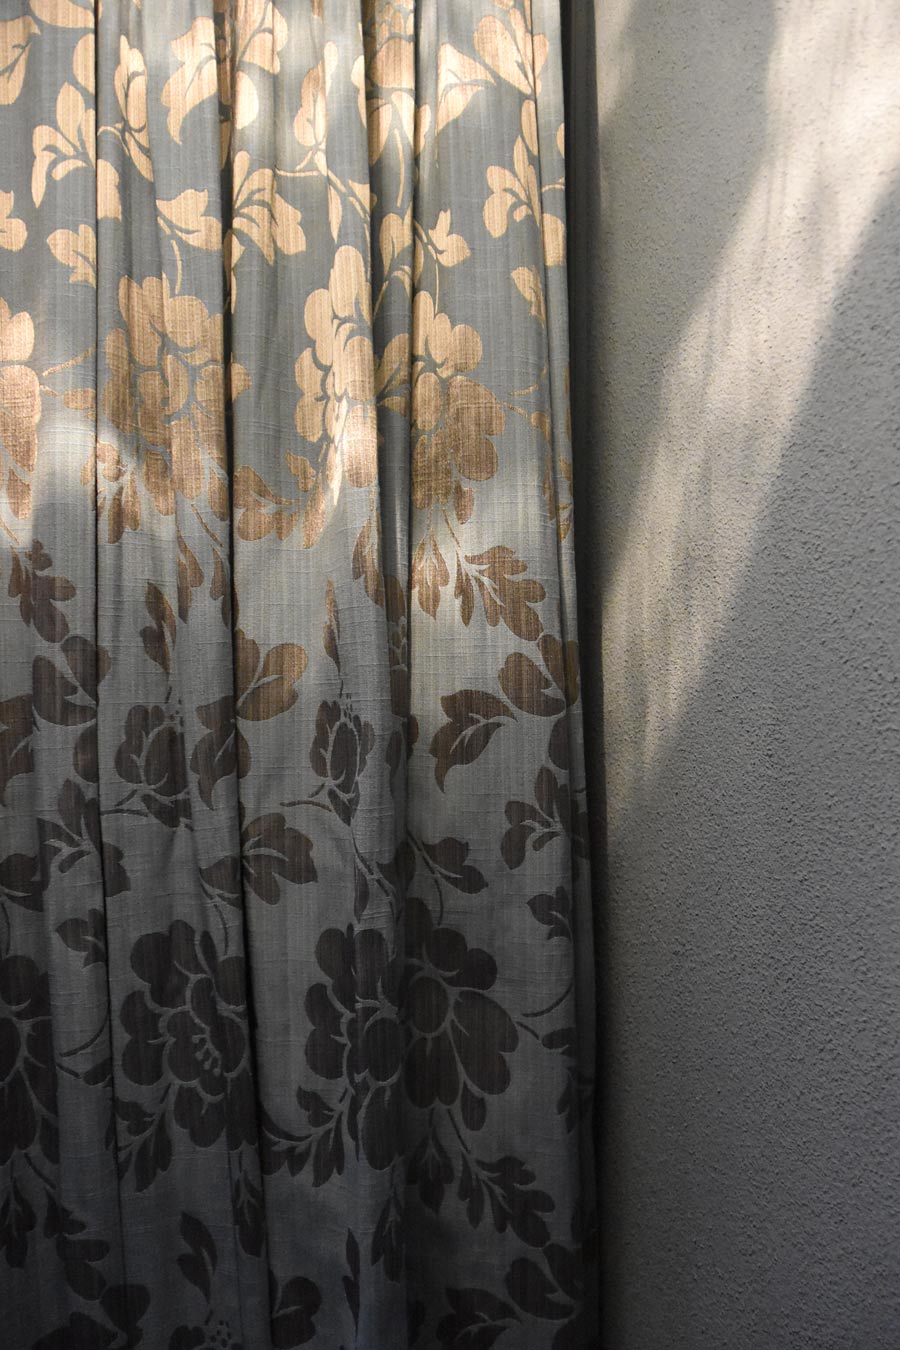 Farbgestaltung Elternschlafzimmer: Das Bild zeigt ein Detail des Vorhangs und das Spiel des Lichts, das sich auf dem Stoff spiegelt.